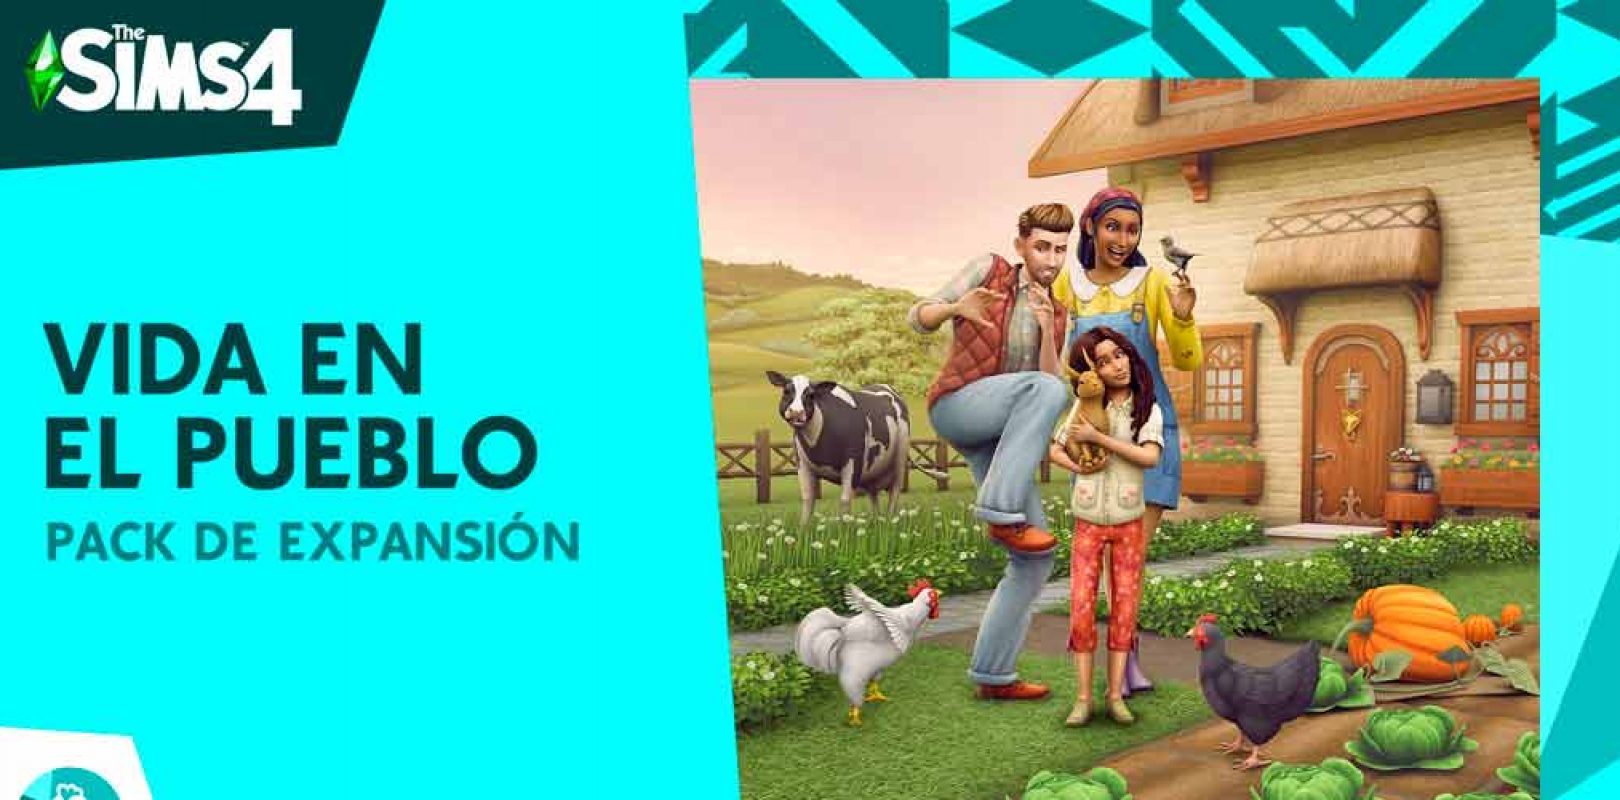 Nuevo tráiler: experimenta el campo de Los Sims 4 Vida en el Pueblo